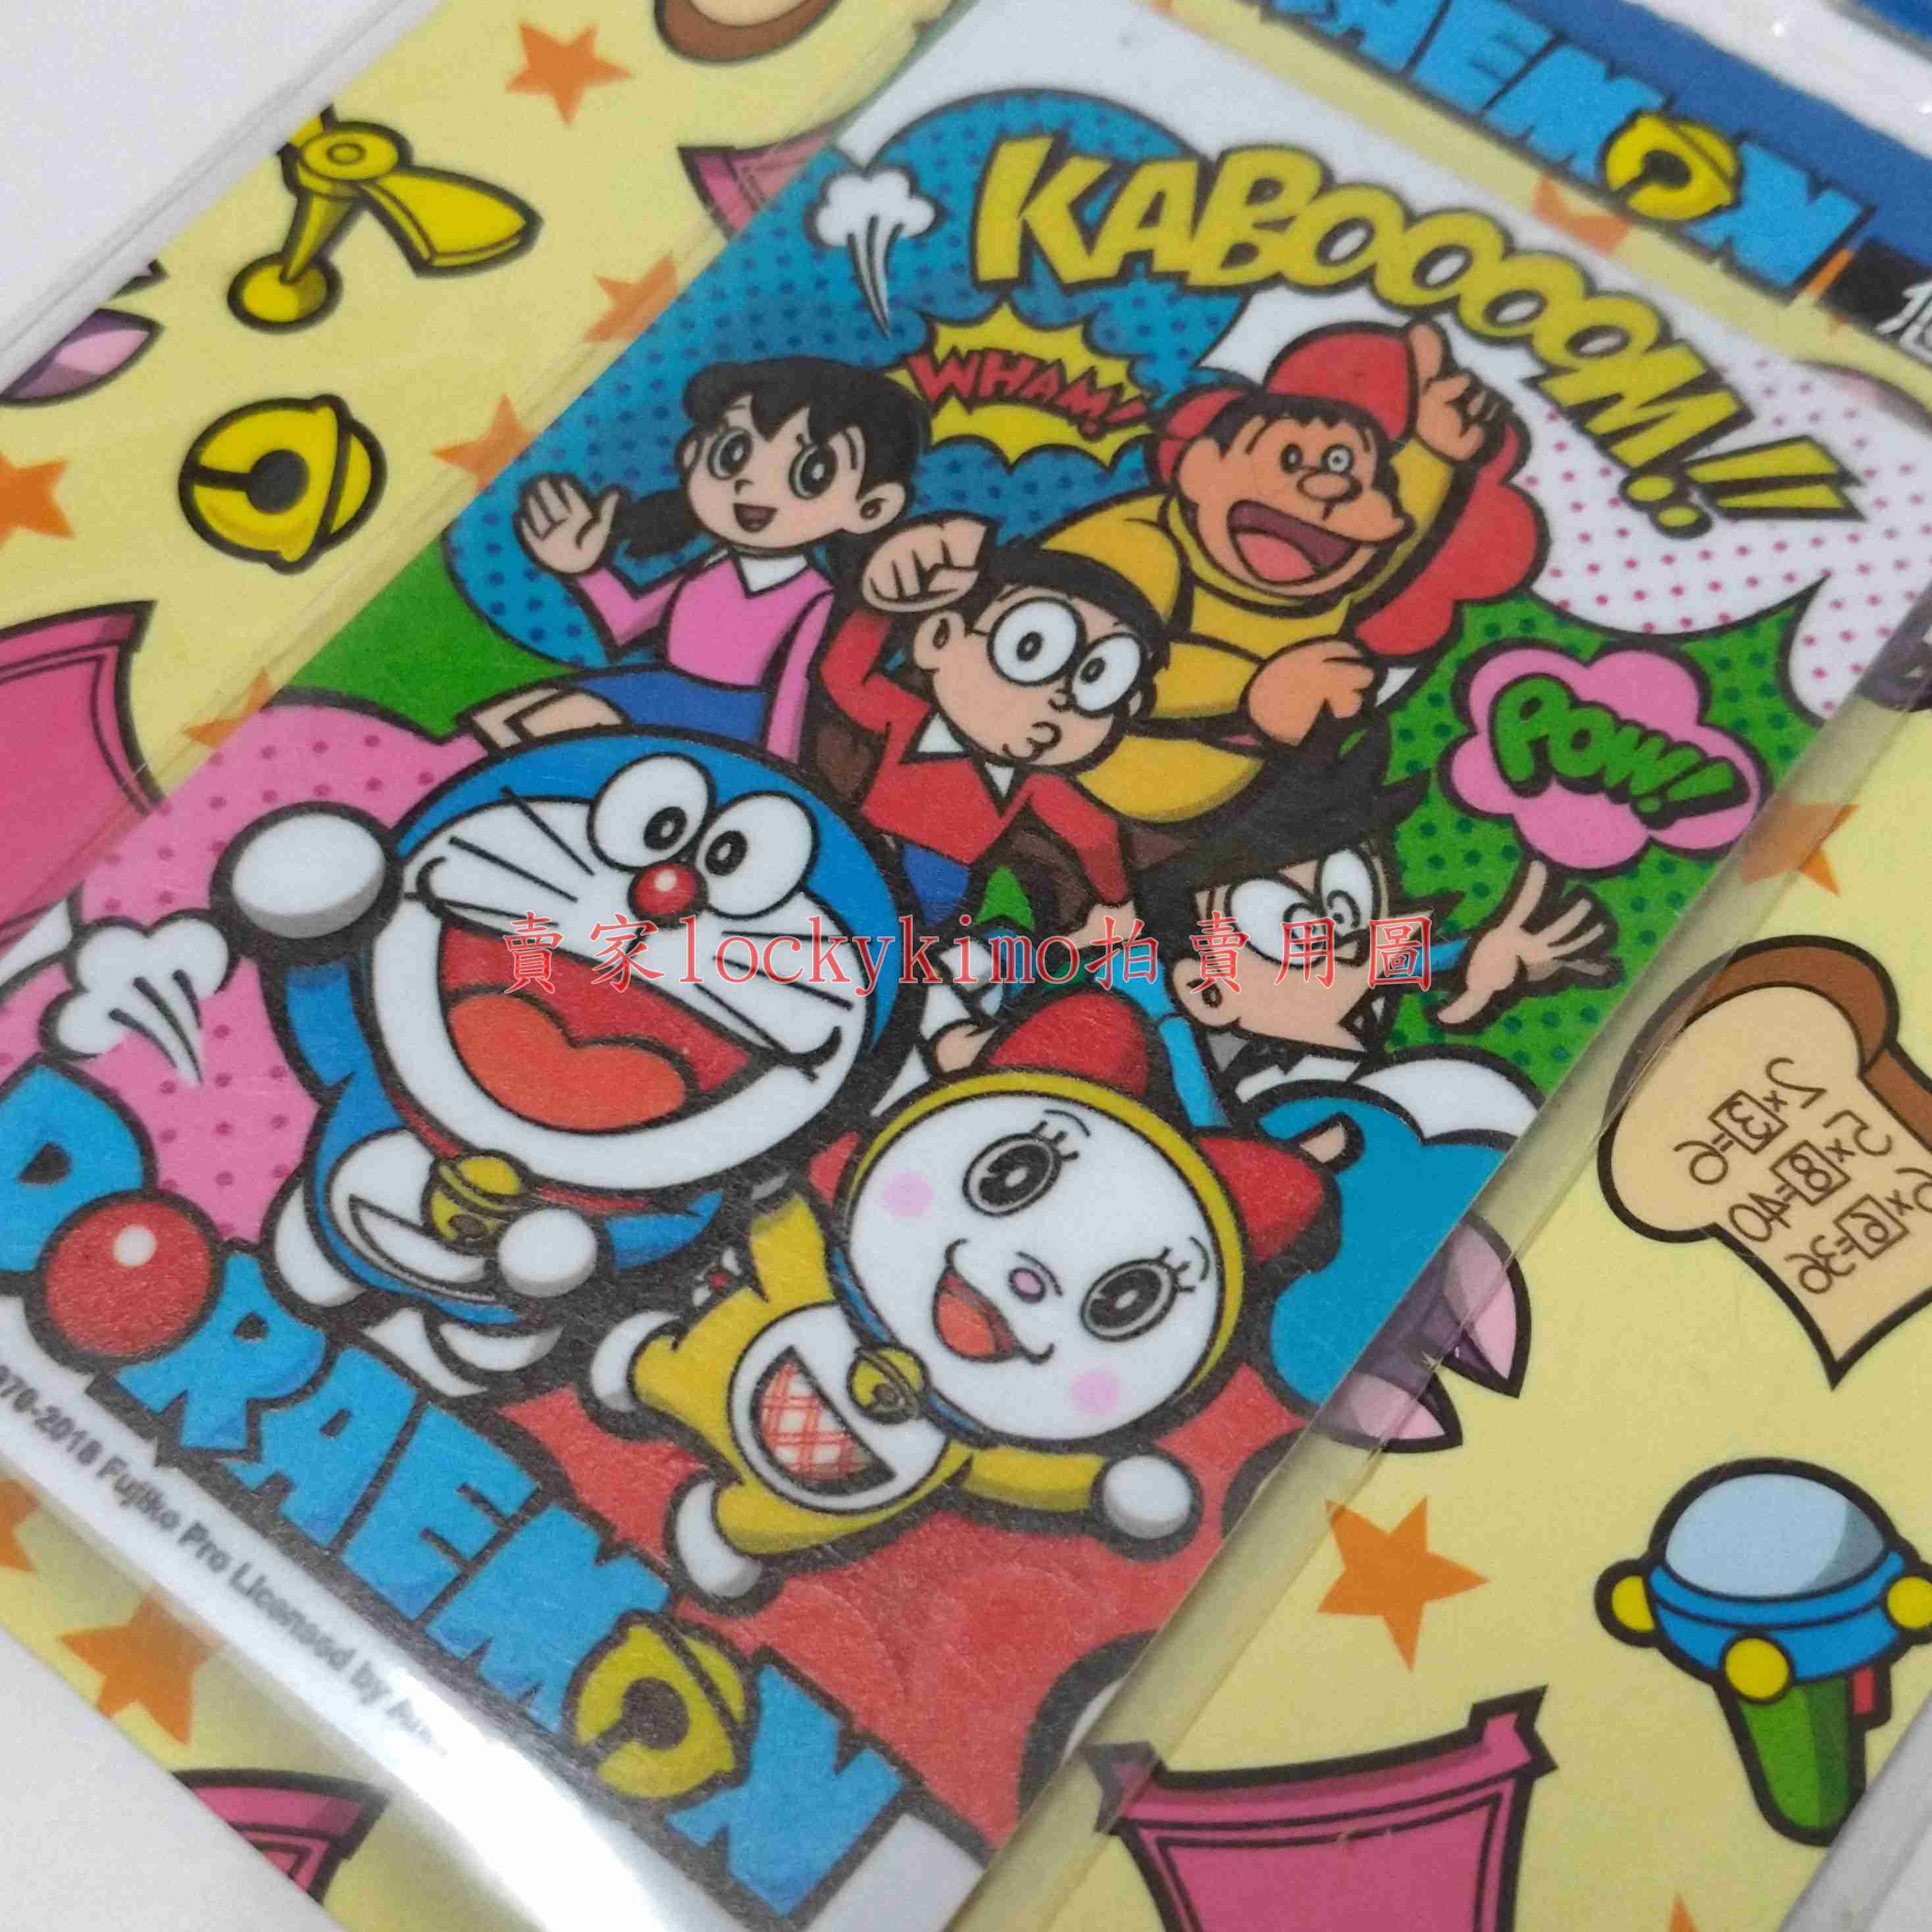 【哆啦A夢 悠遊卡 KABOOOOM】收藏卡 Doraemon 珍藏卡 哆啦a夢 友達 機器貓 小叮噹 多啦A夢 超能貓